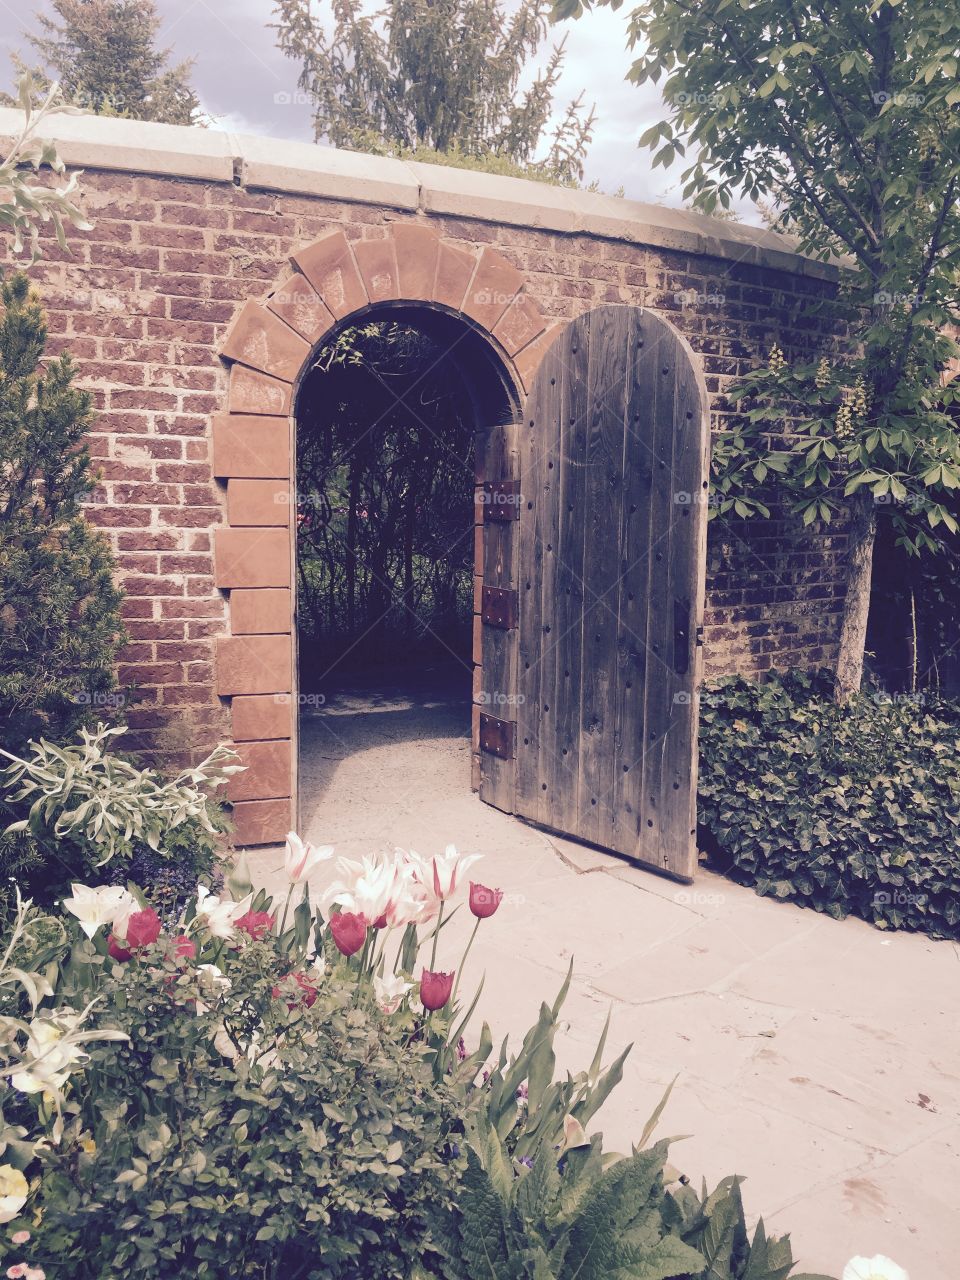 Entrance to the secret garden